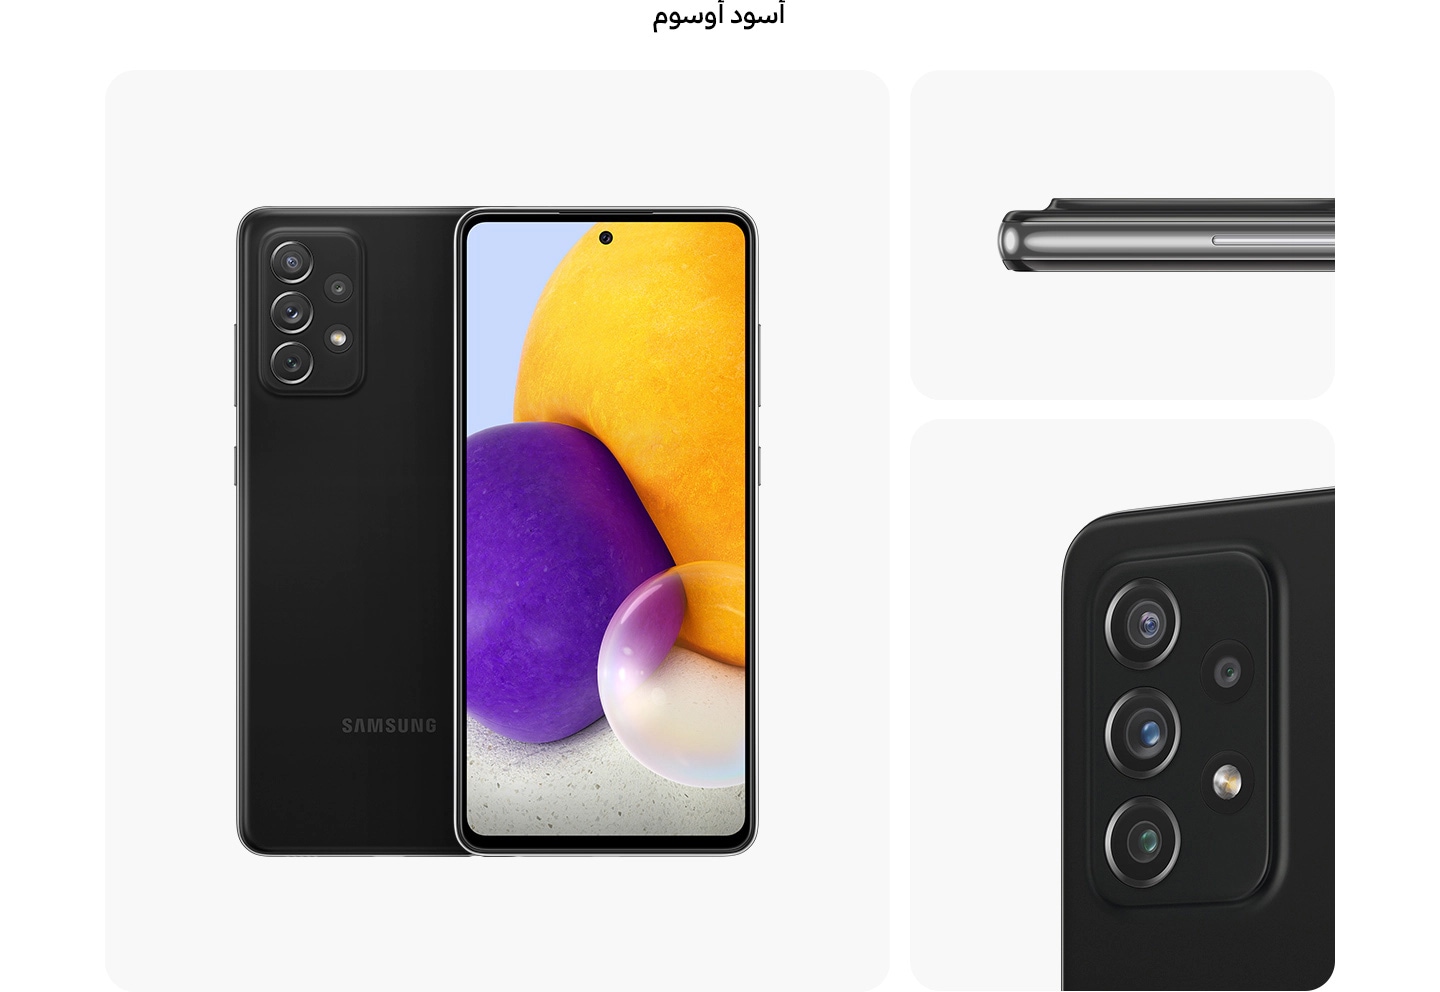 هاتف Galaxy A72 باللون الأسود الرائع، مرئي من زوايا متعددة لعرض التصميم: من الخلف والأمام والجانب، مع نظرة مقربة إلى الكاميرا الخلفية.